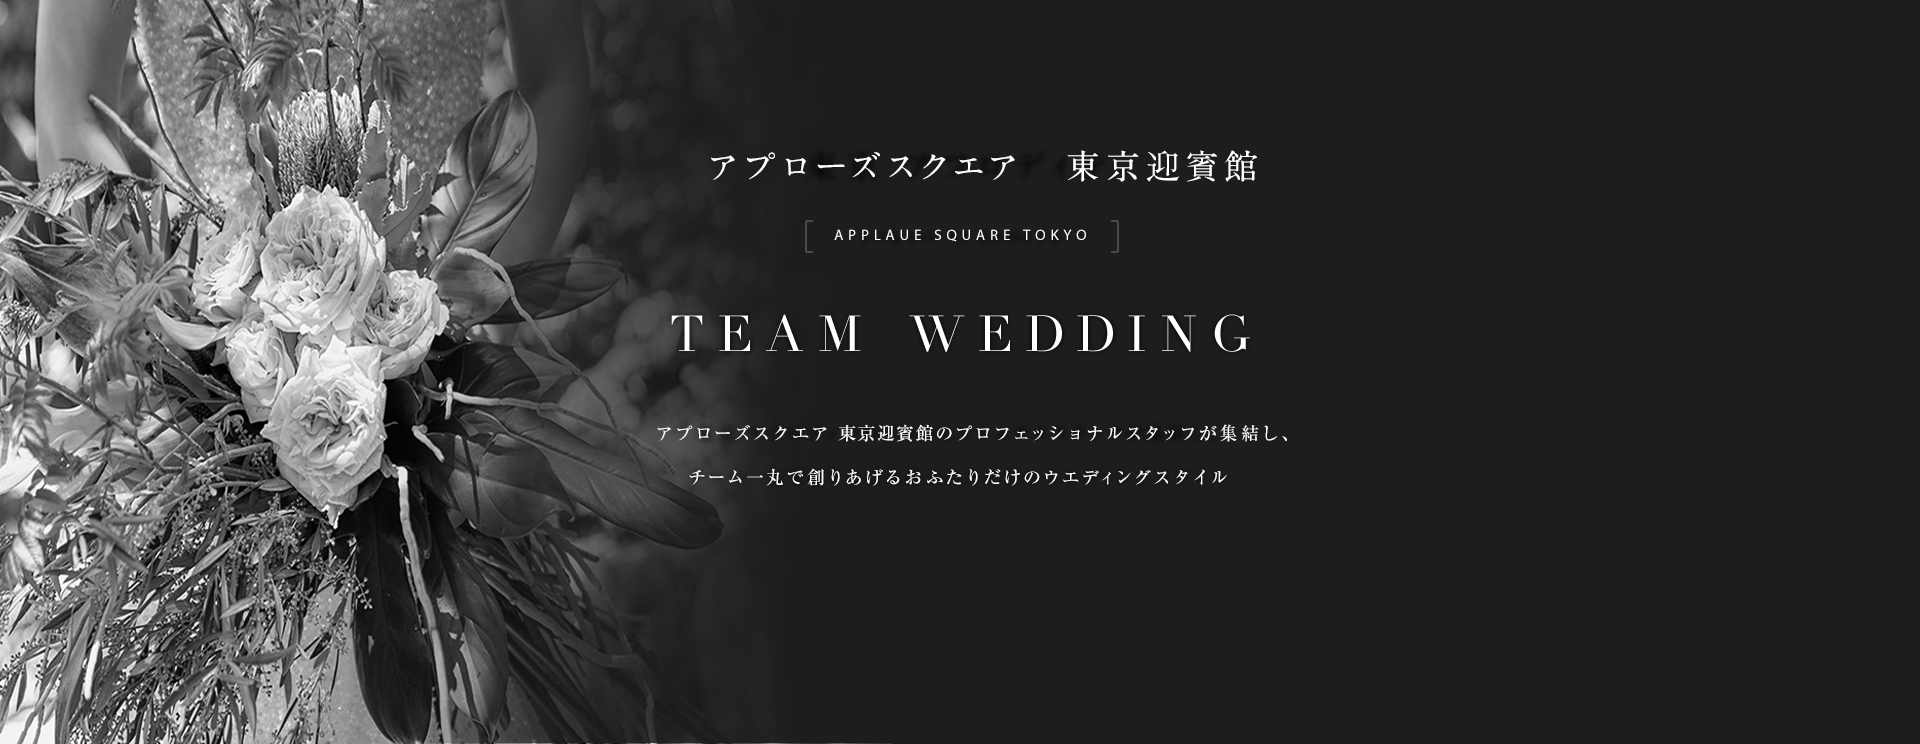 アプローズスクエア東京迎賓館 TEAM WEDDING アプローズスクエア東京迎賓館のプロフェッショナルが集結し、チーム一丸で創りあげるおふたりだけのウェディングスタイル